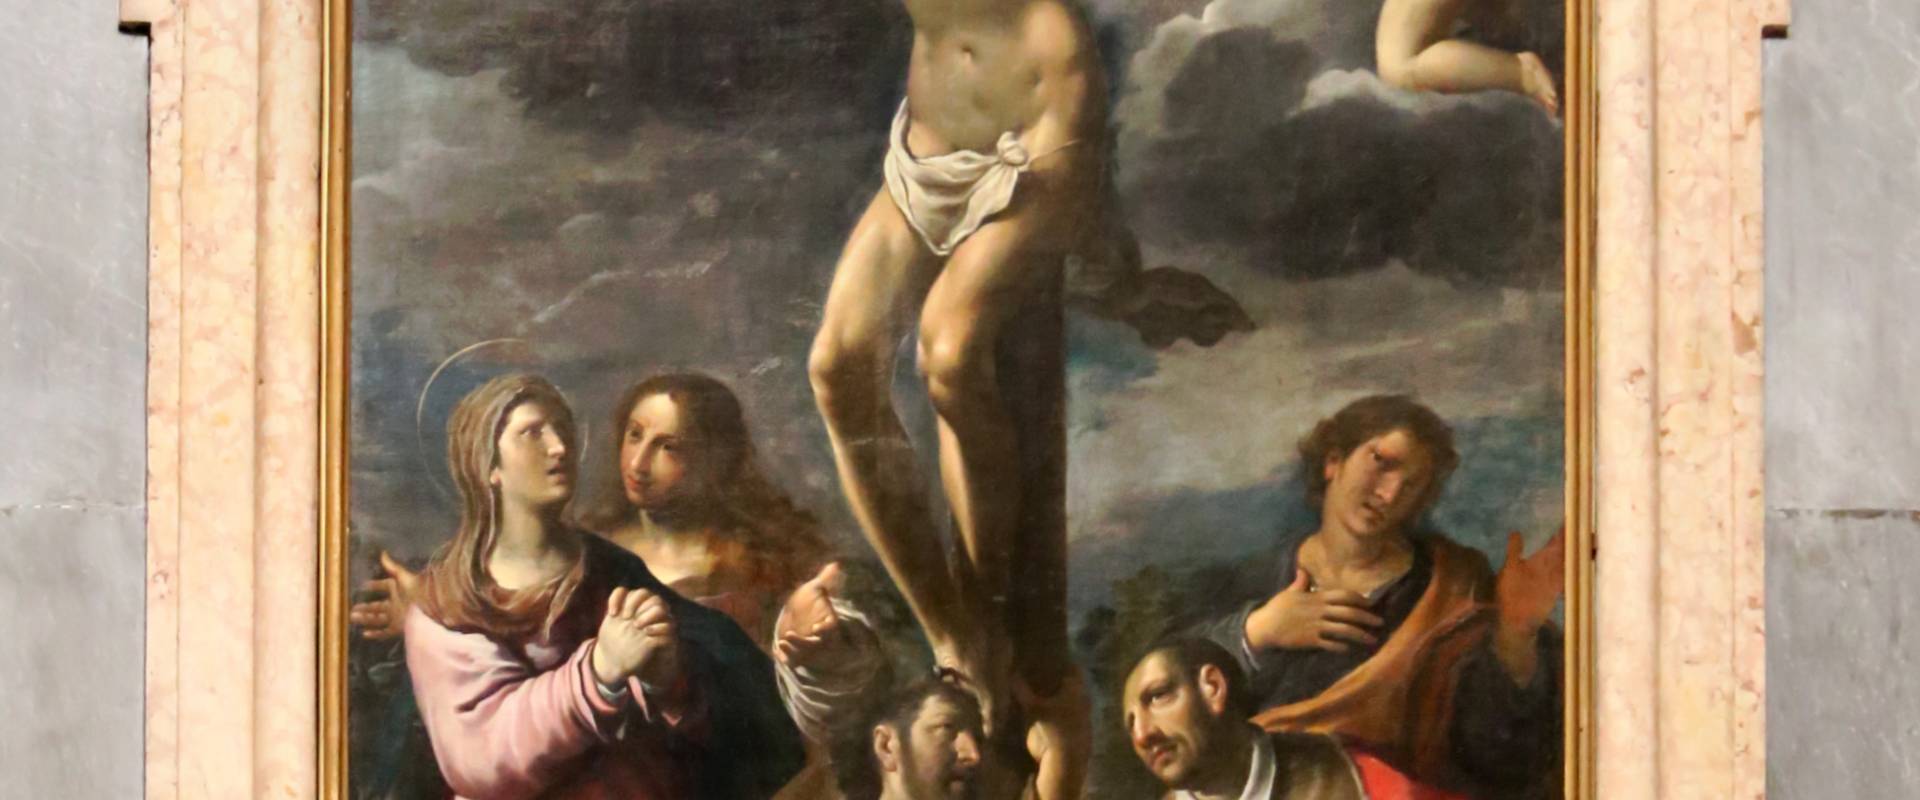 Camillo ricci, crcifissione e angeli, 1600-50 ca photo by Sailko